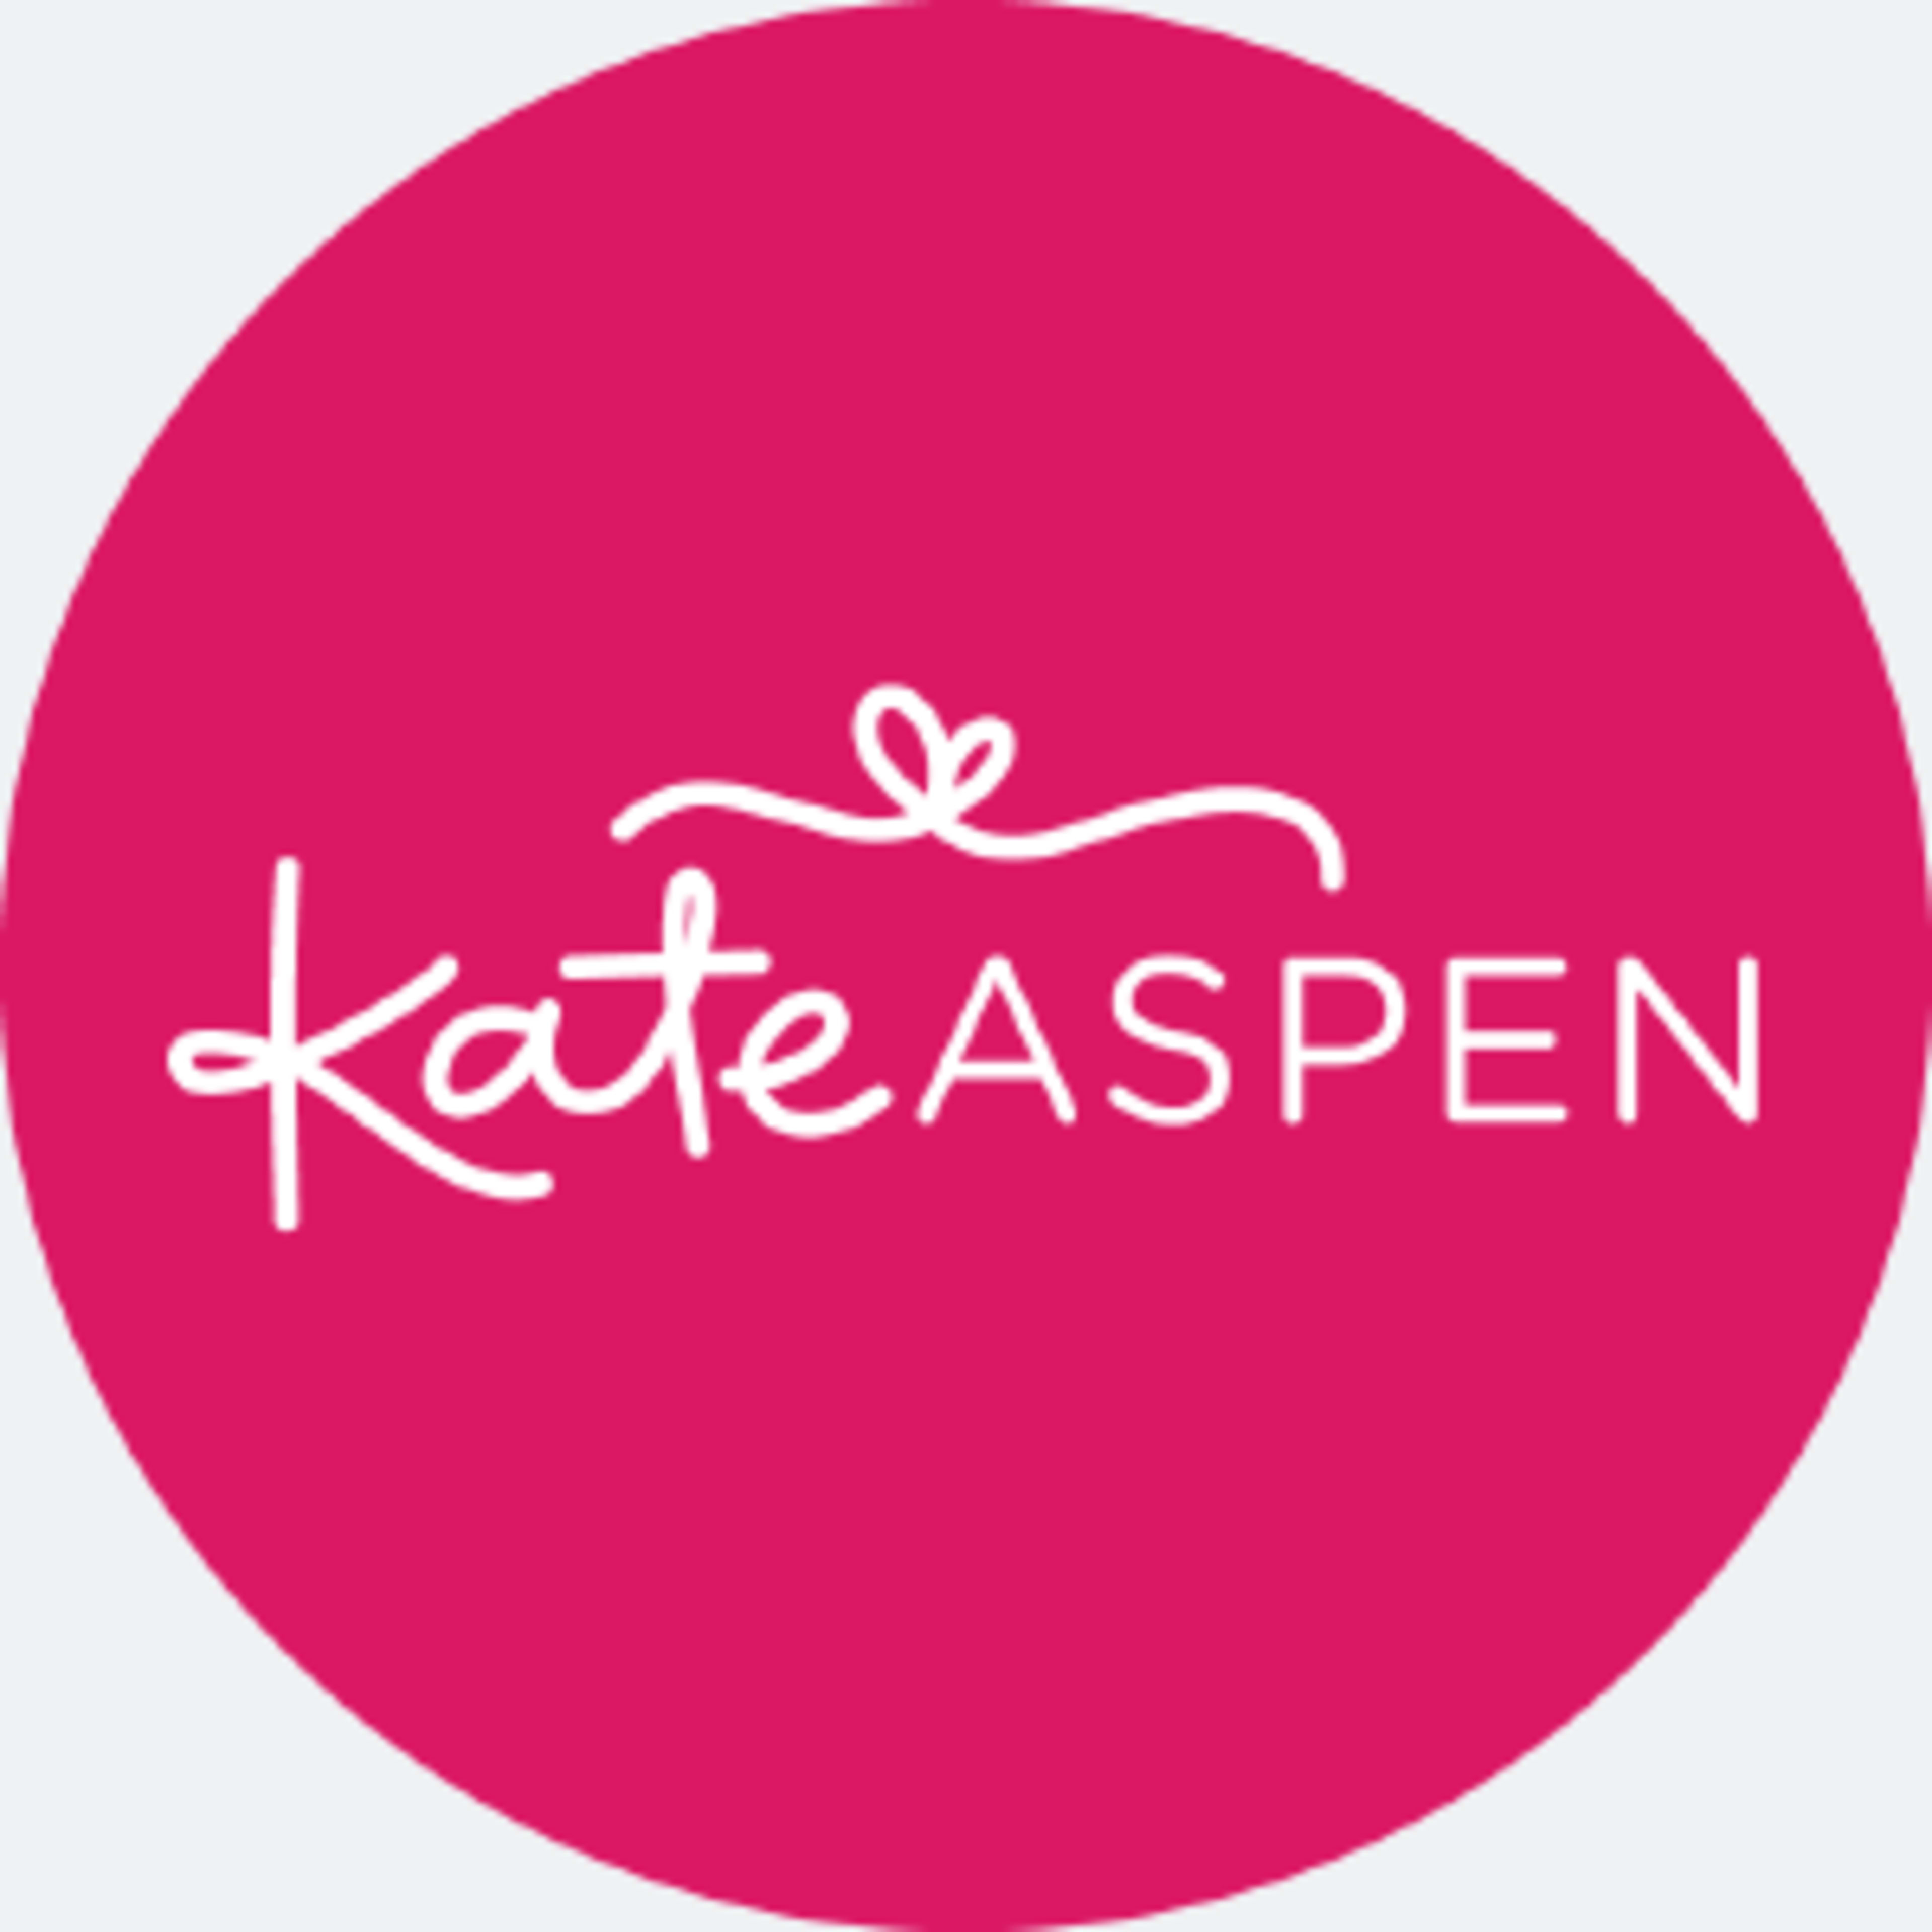 Kate AspenCode